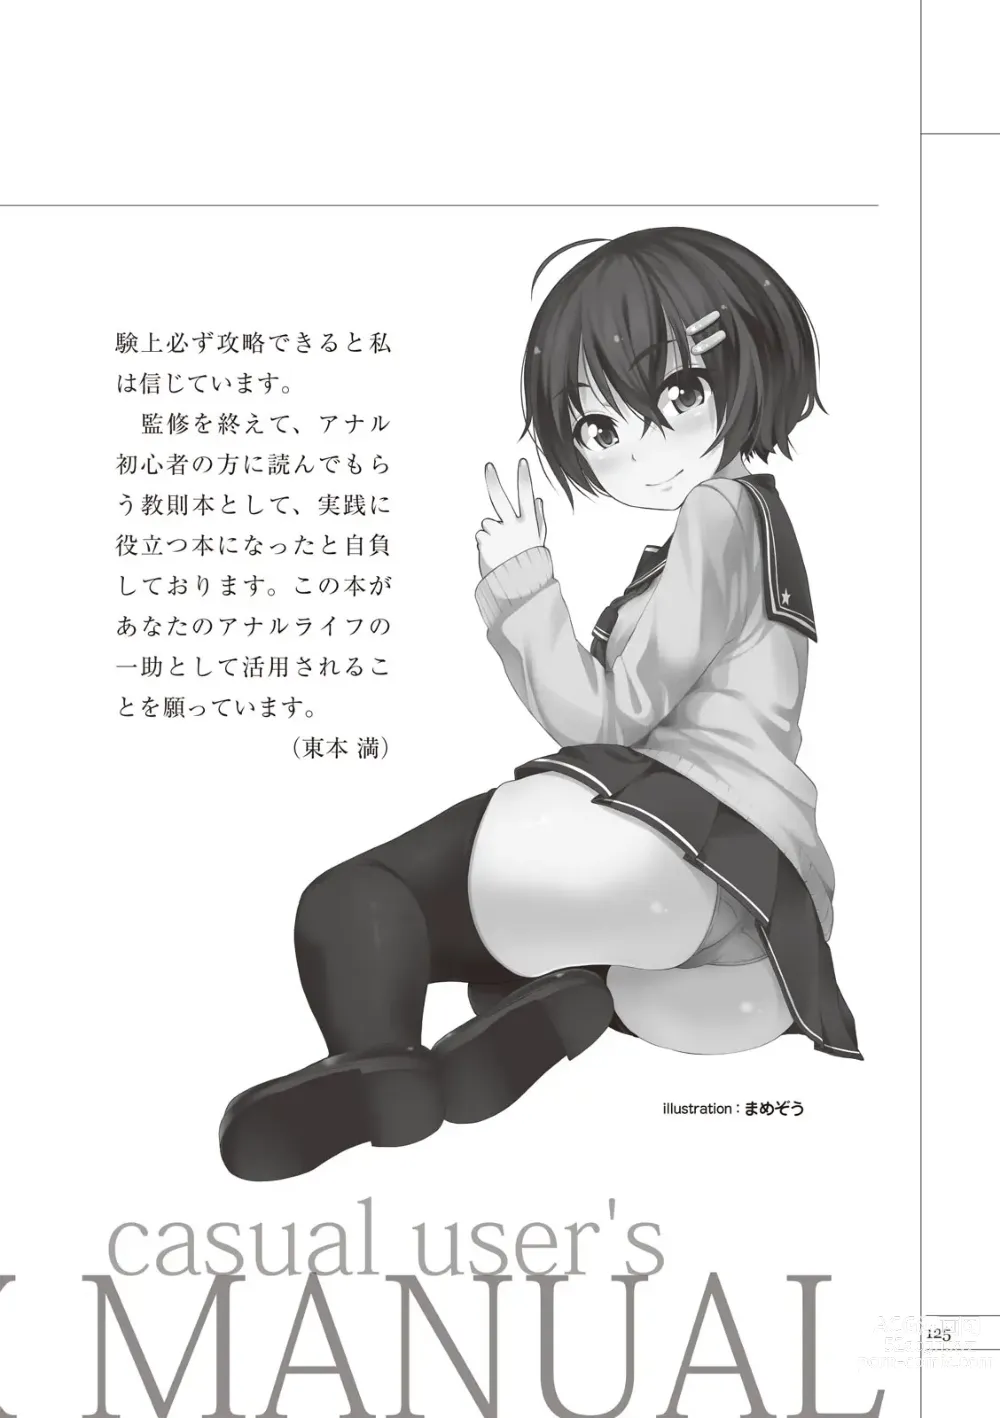 Page 127 of manga いますぐデキる 図説おしりエッチマニュアル